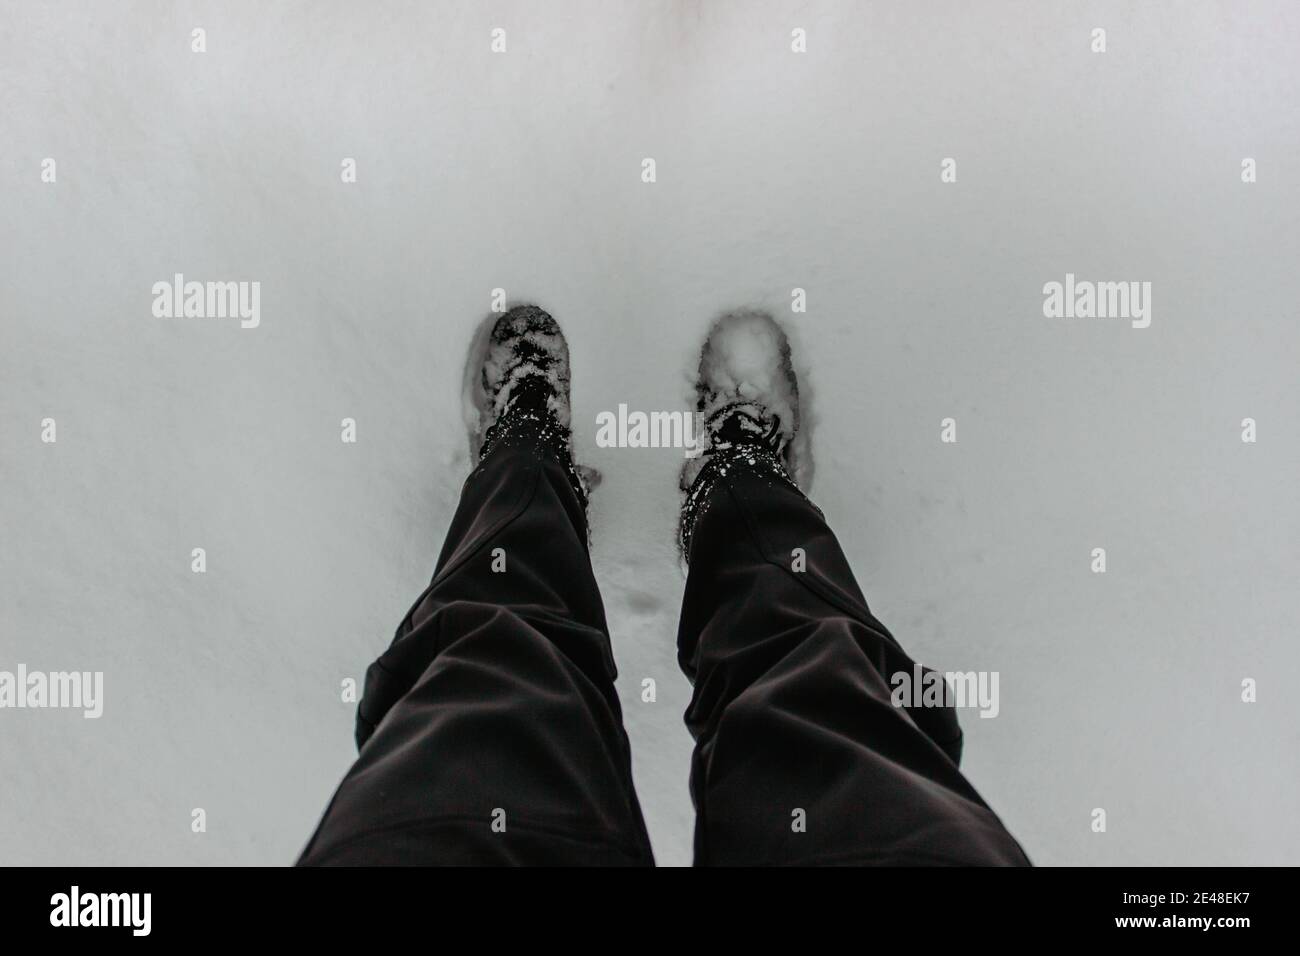 Dettaglio di stivali caldi impermeabili in neve fresca profonda.piedi femminili in scarpe nere, passeggiate invernali in neve.Vista ad alto angolo delle gambe in piedi femmina con sno Foto Stock